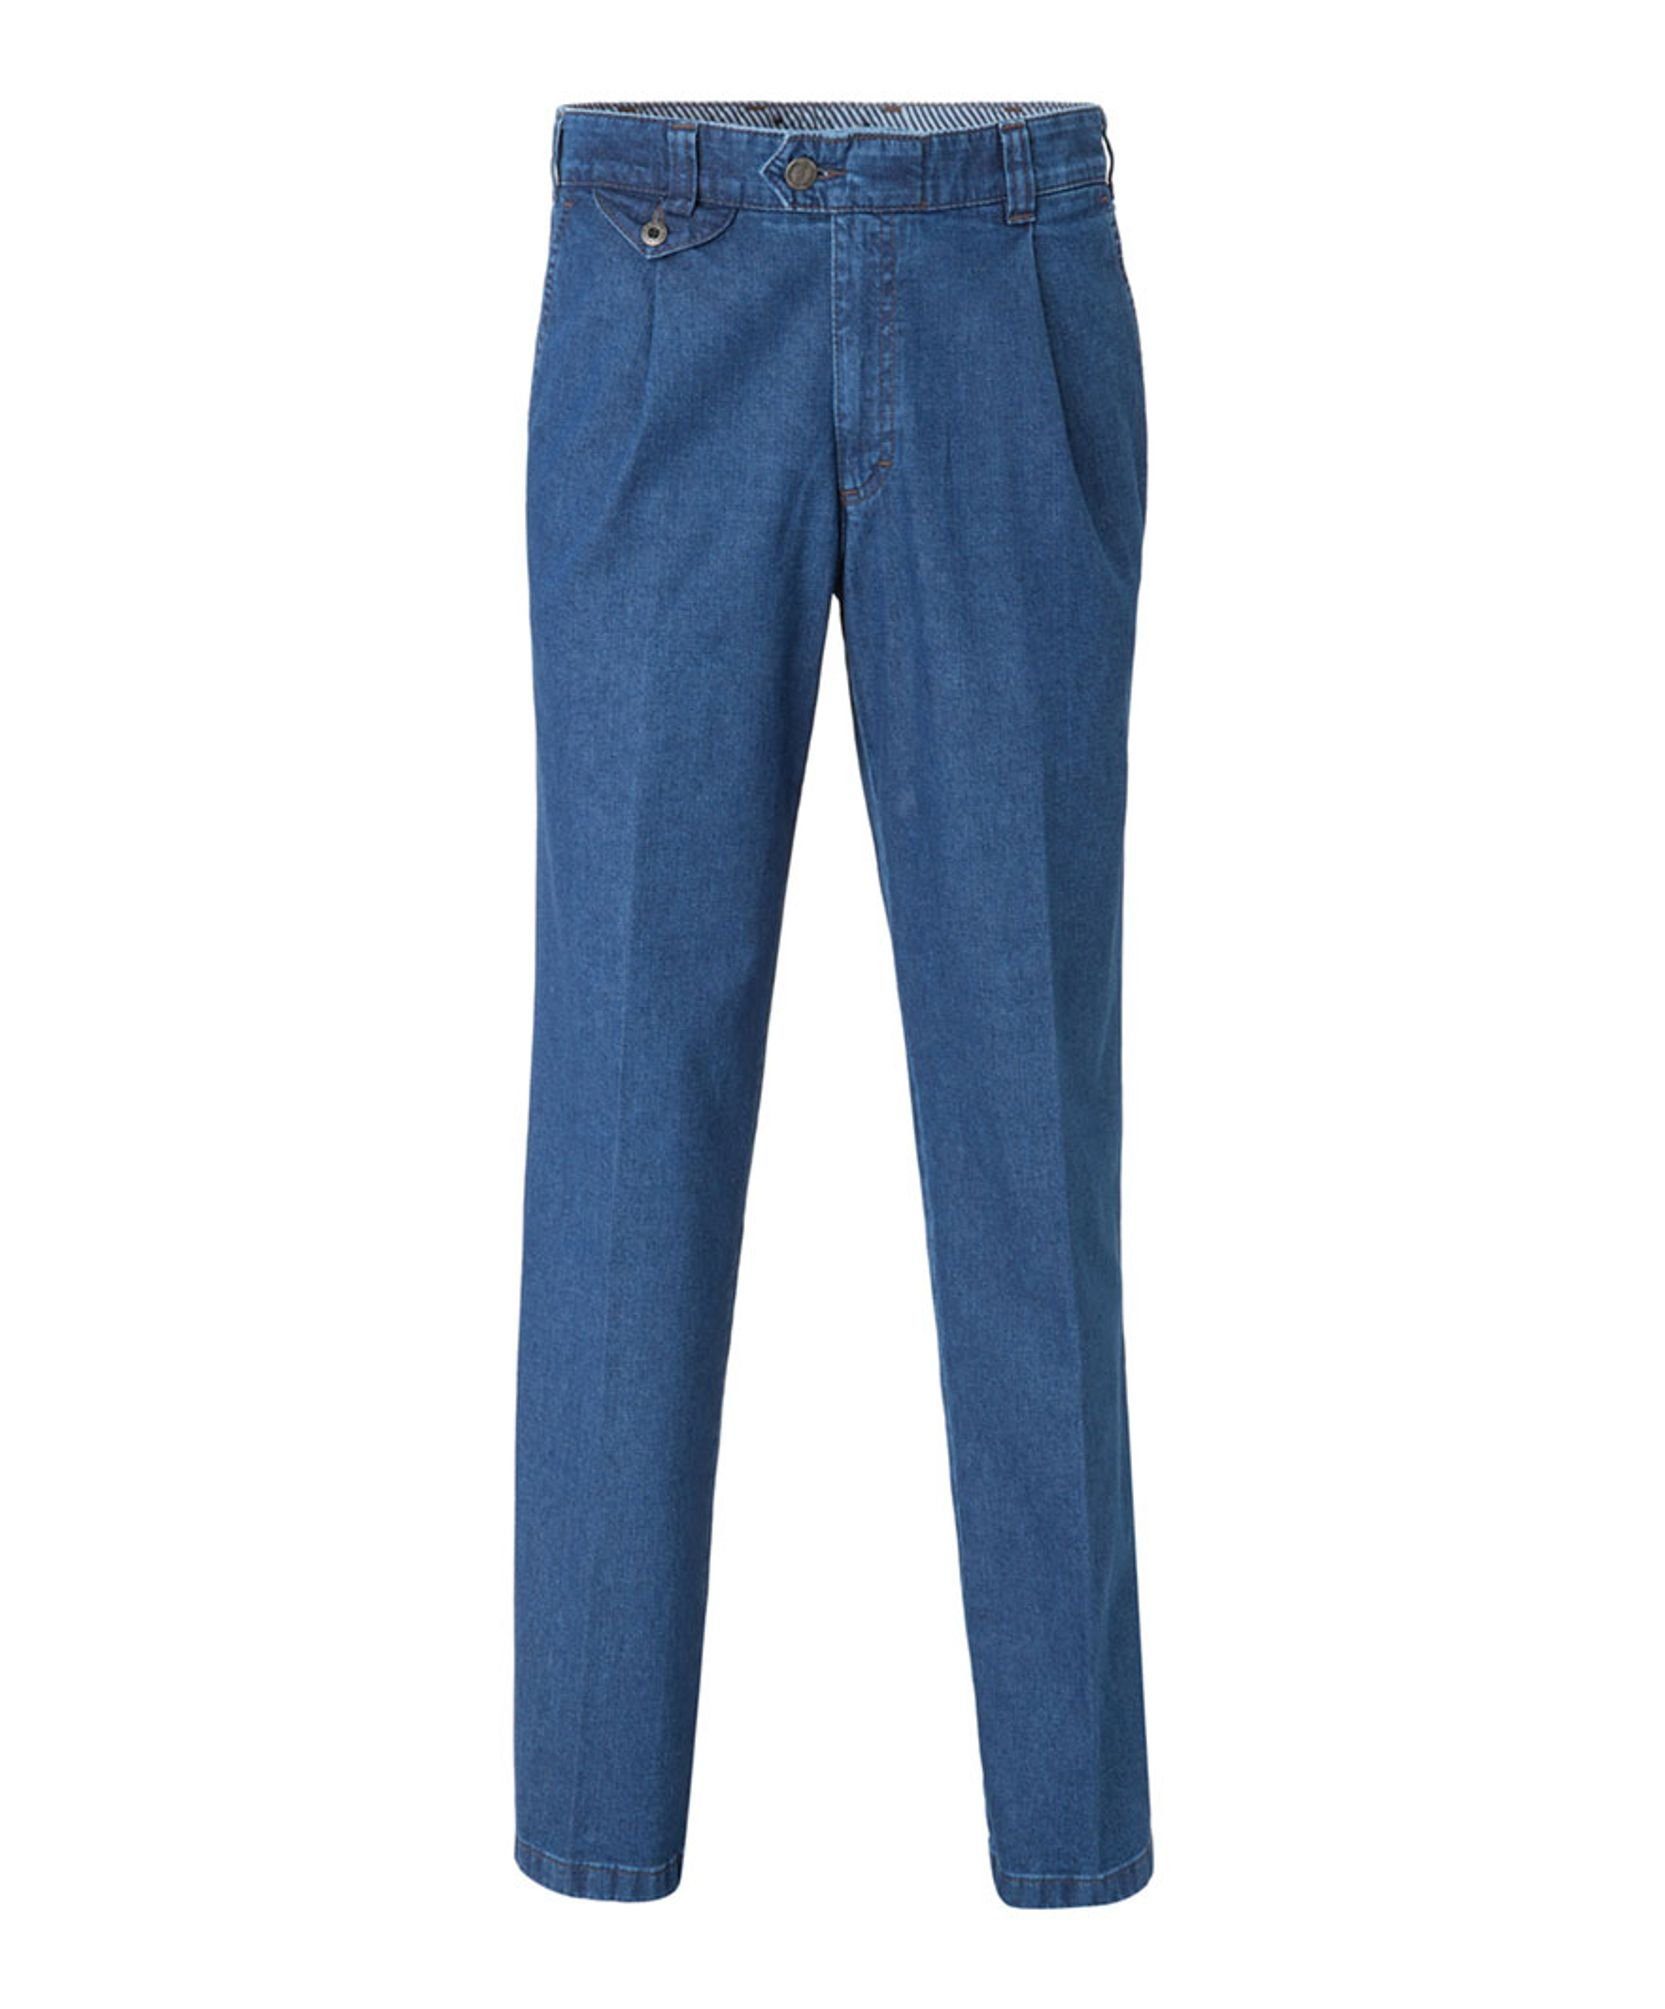 (22) EUREX Blue BRAX Blue 50-6900 by 5-Pocket-Jeans